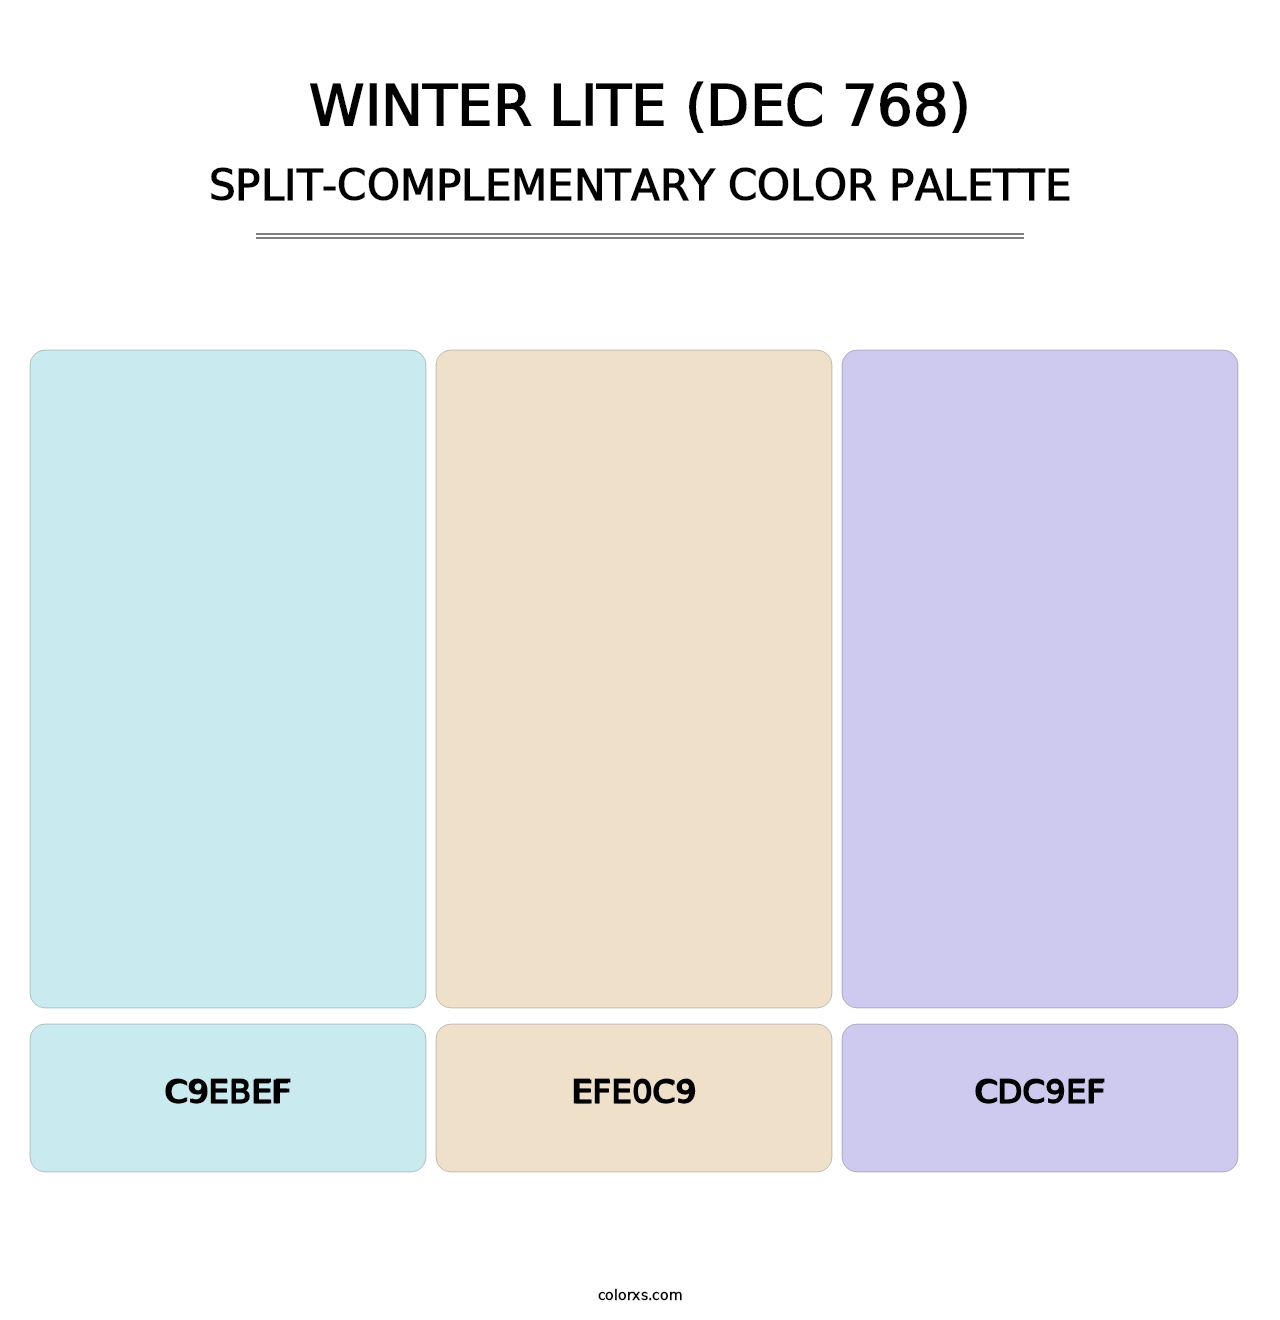 Winter Lite (DEC 768) - Split-Complementary Color Palette